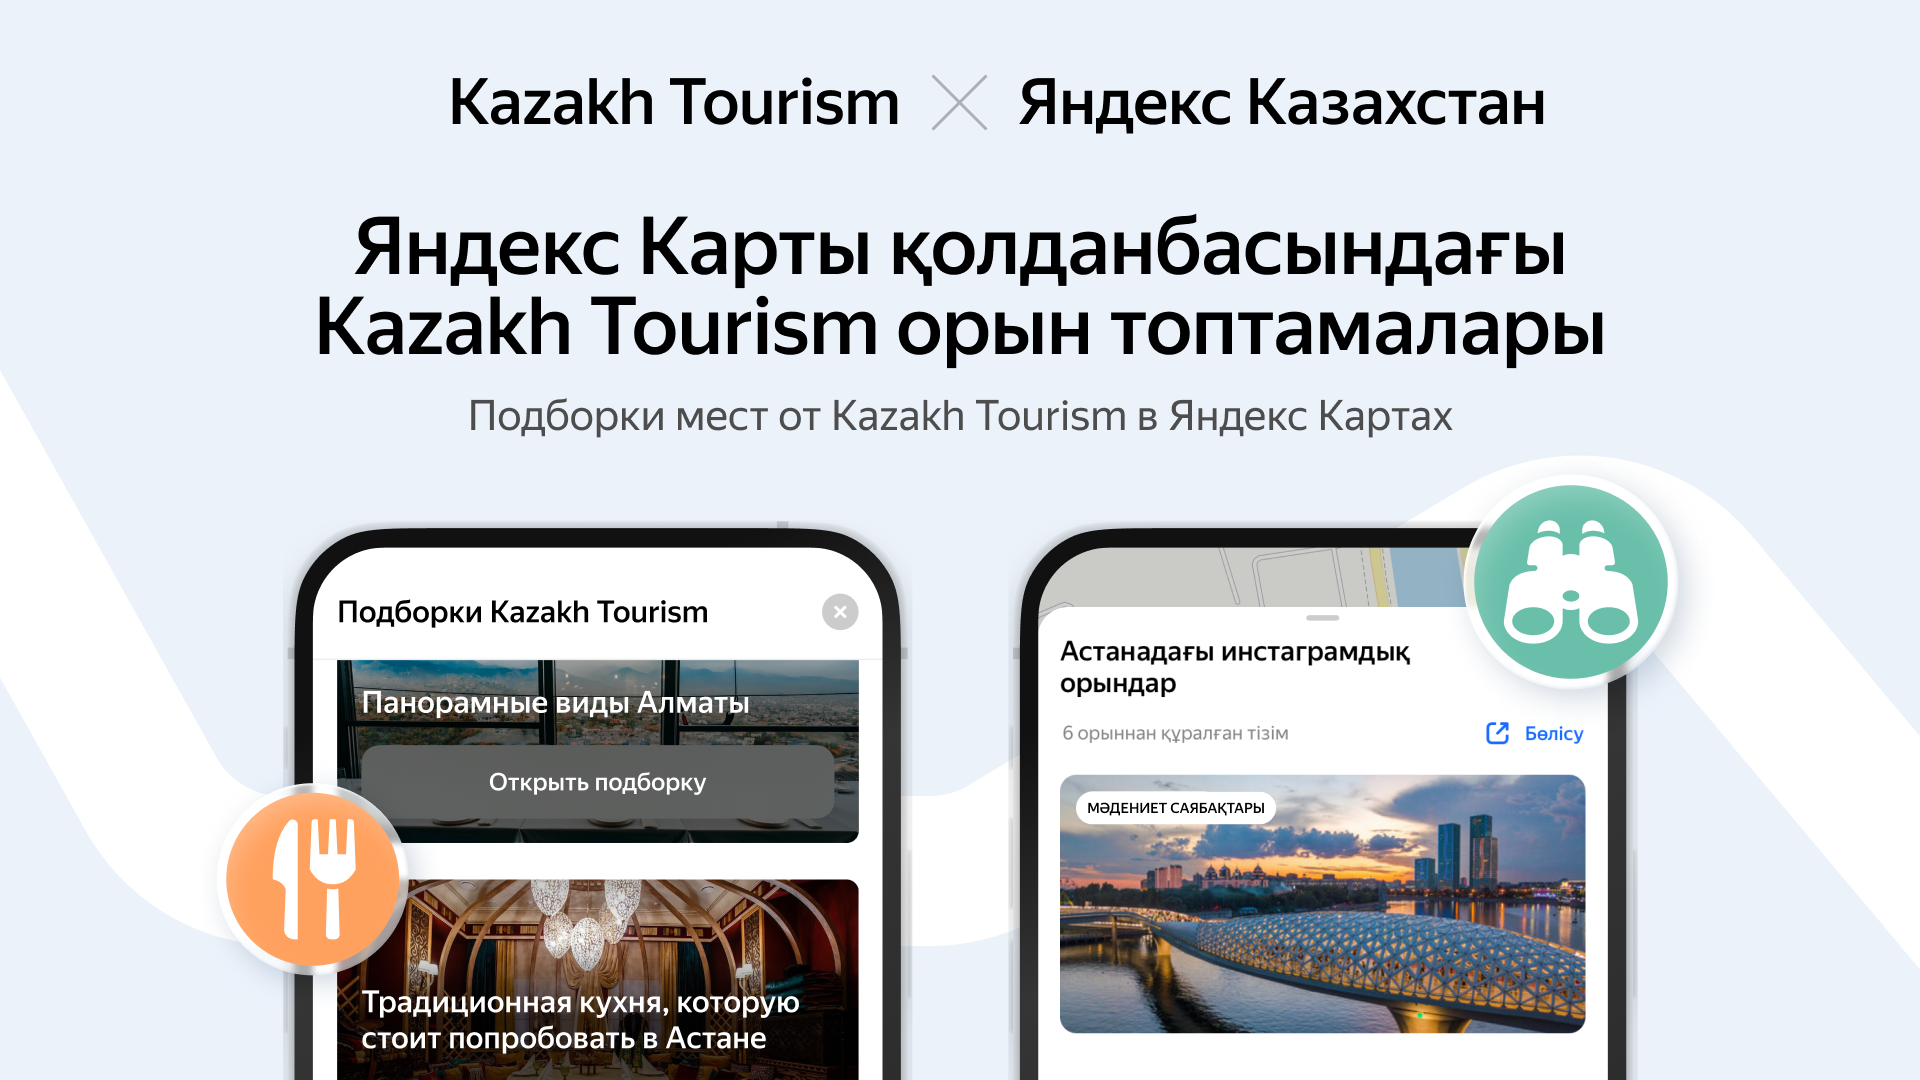 Kazakh Tourism и Яндекс Казахстан планируют совместно развивать сферу туризма